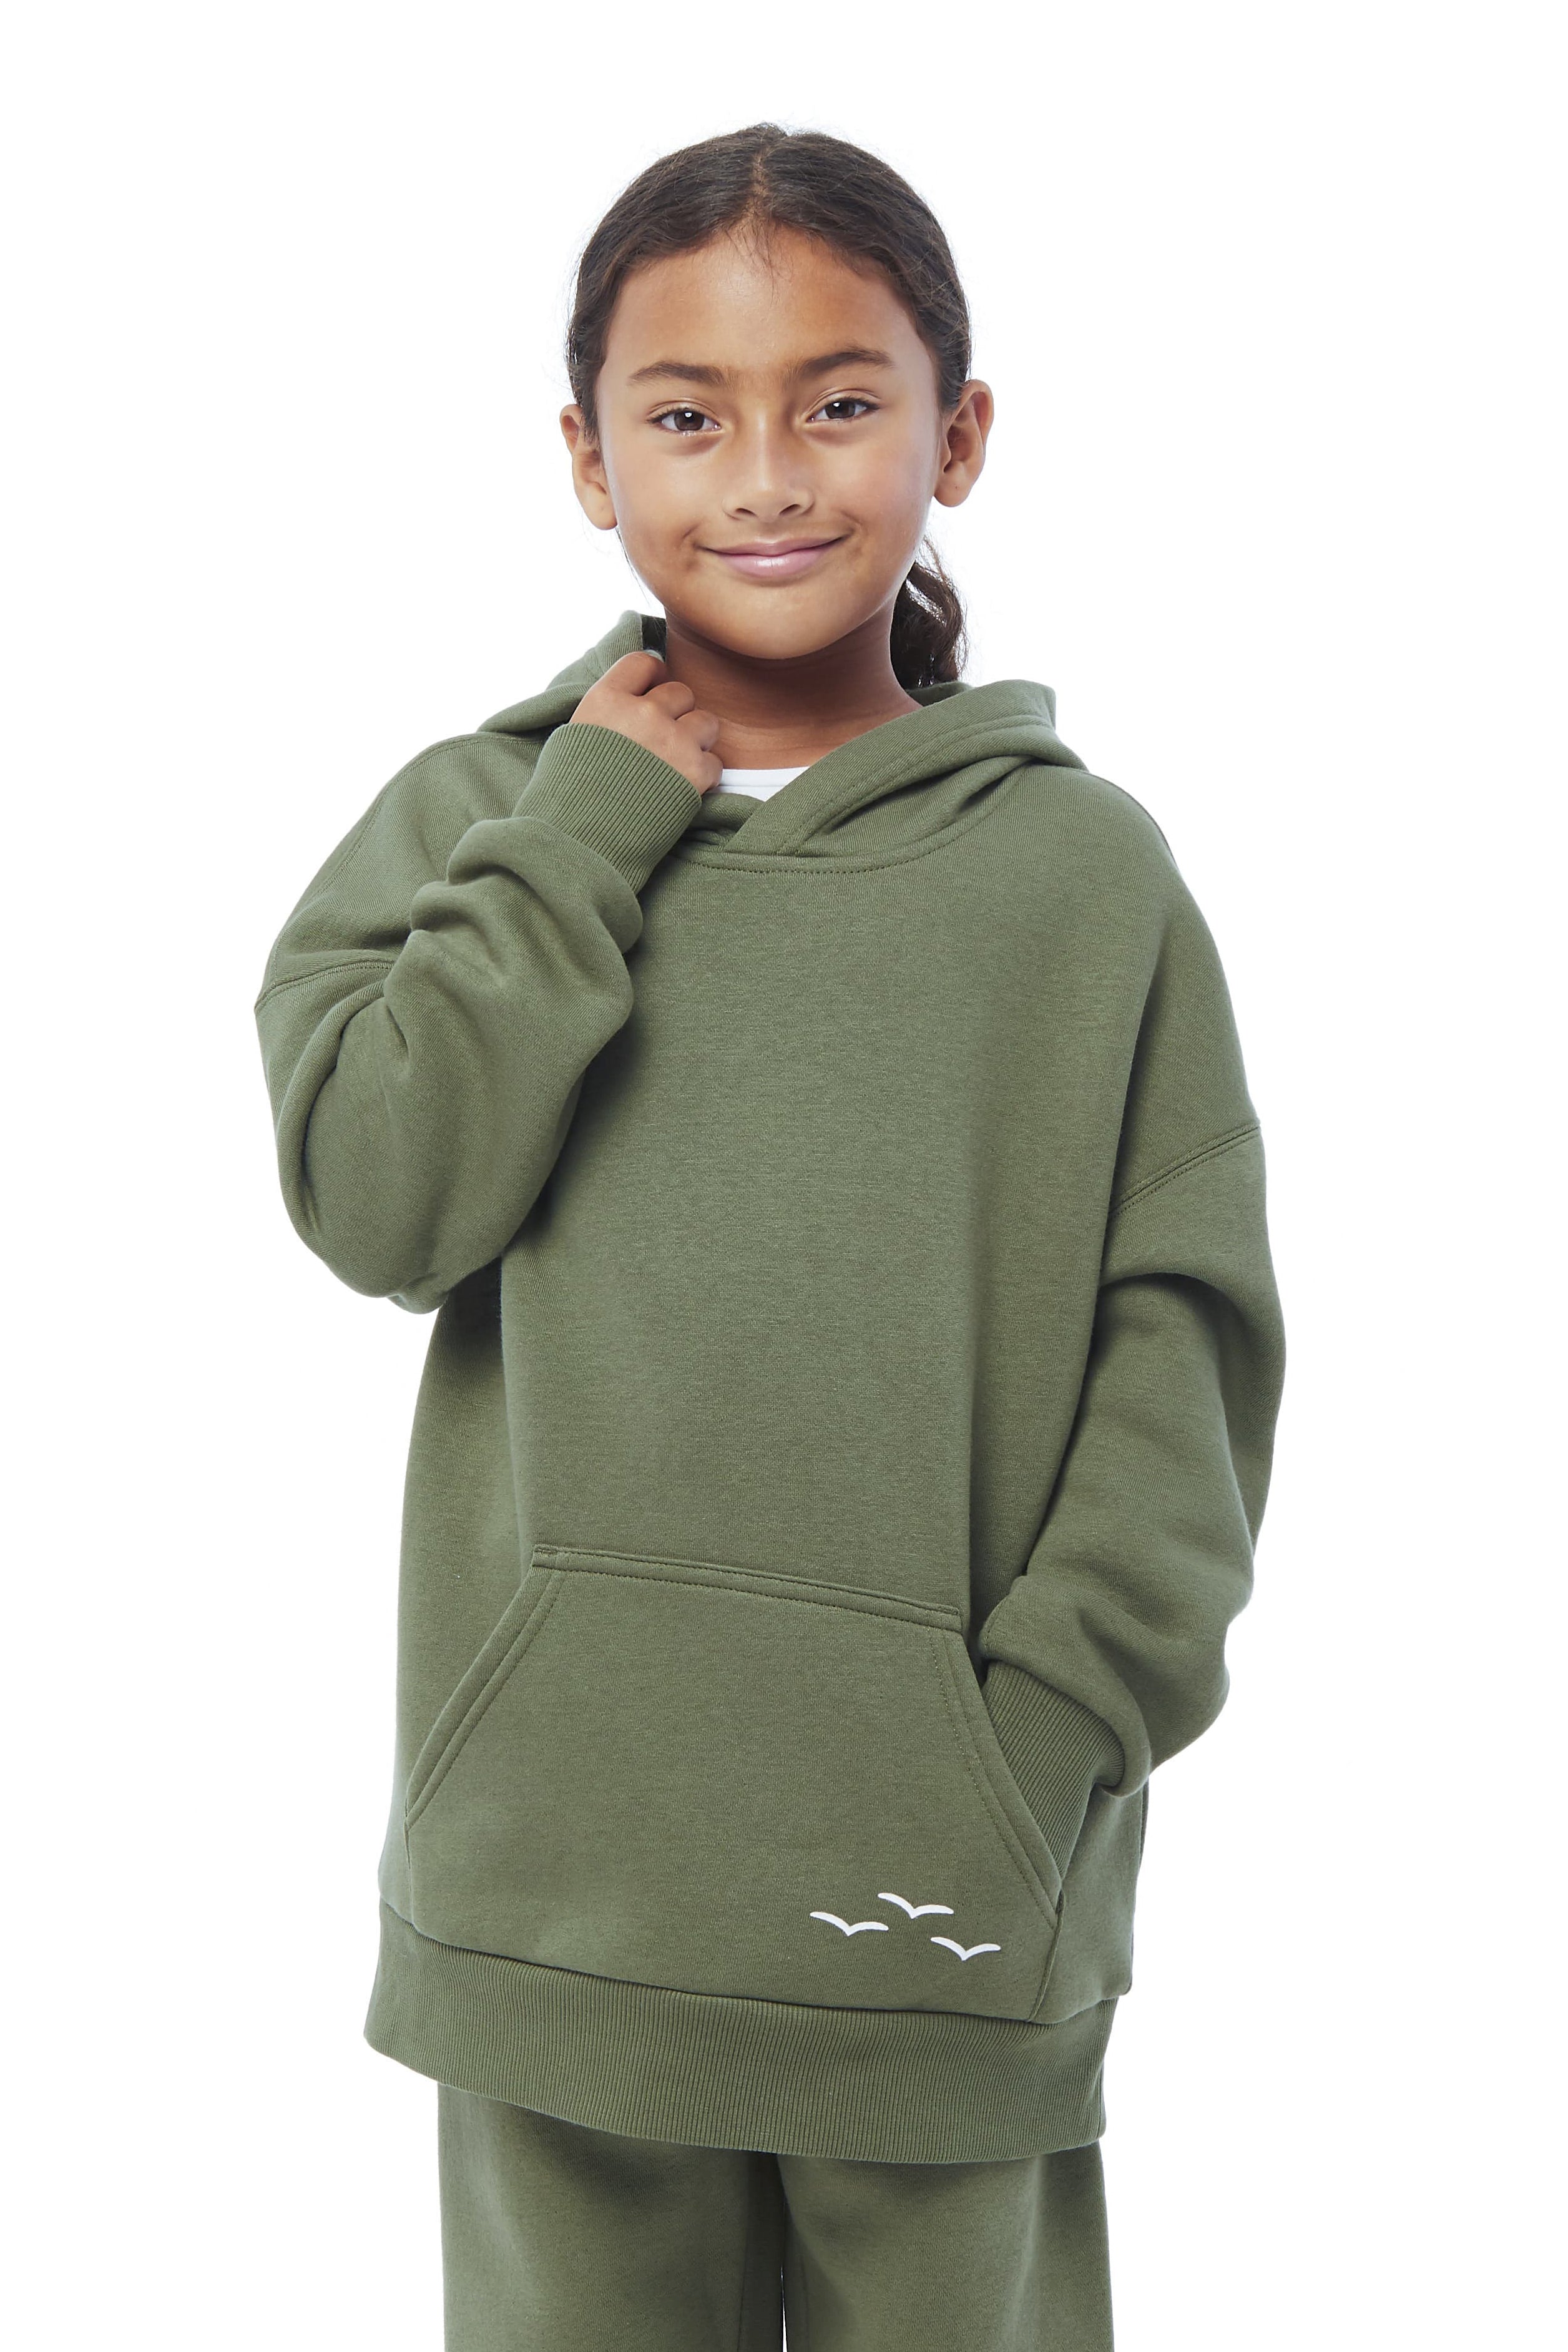 Kids Cooper fleece hoodie in olive